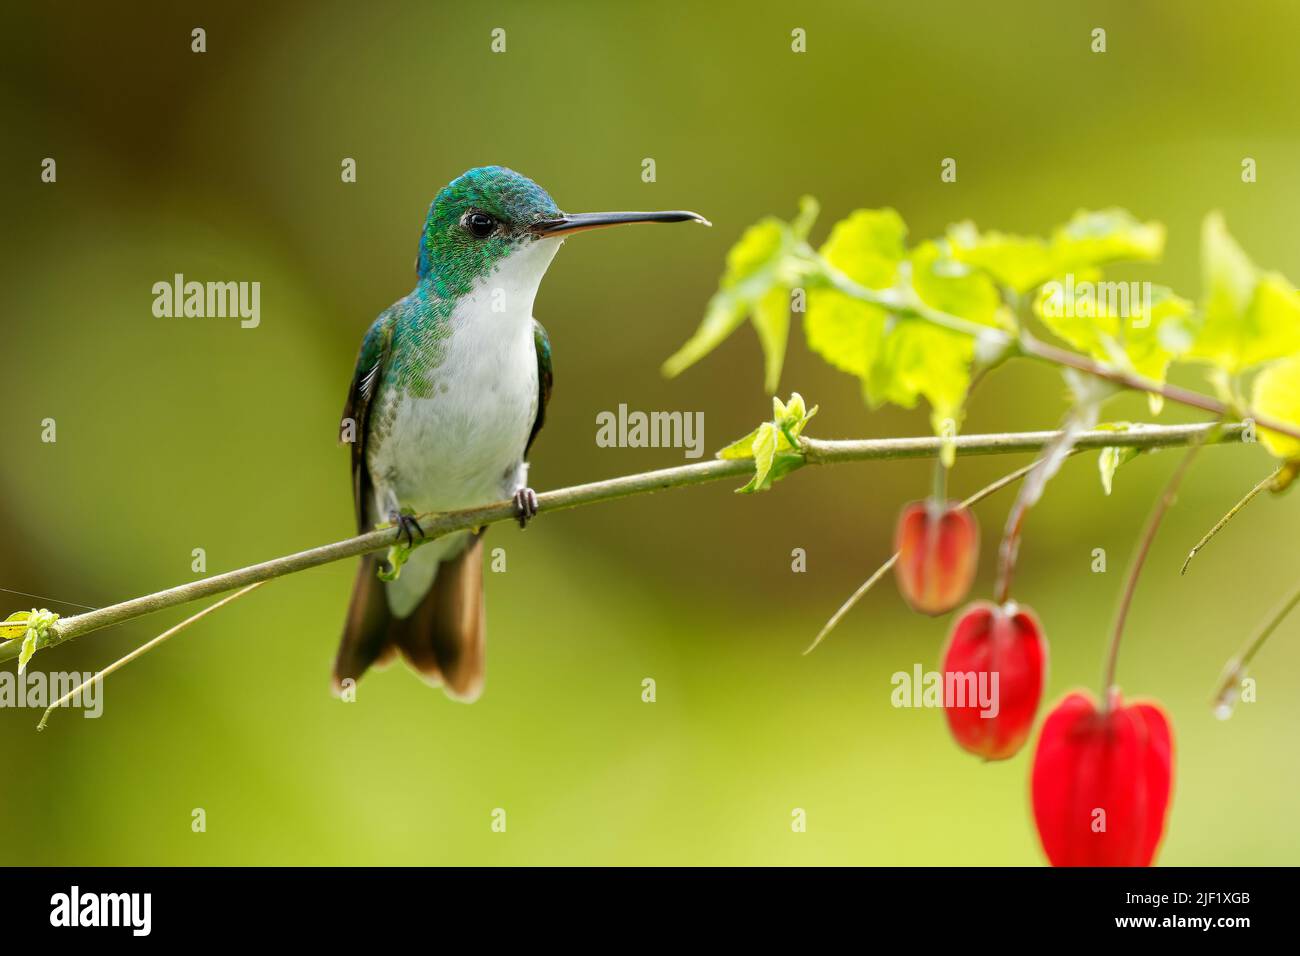 Emeraude andine - colibri d'Uranomitra franciae, oiseau vert et blanc trouvé au bord de la forêt, bois, jardins et broussailles dans les Andes de Colombie, ECU Banque D'Images